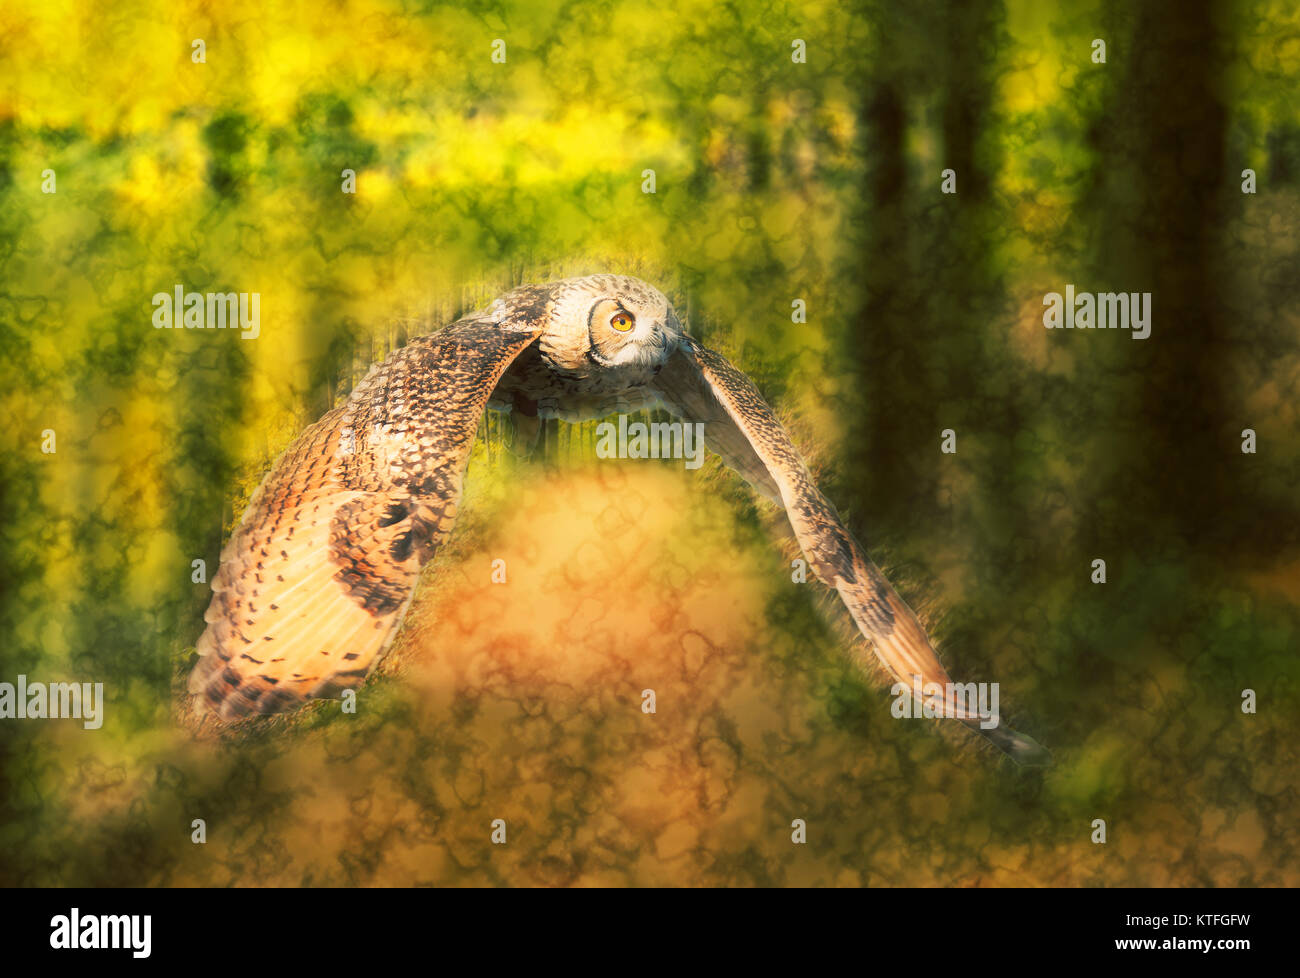 Migliorate digitalmente immagine di un gufo in volo in una foresta con ali stese Foto Stock